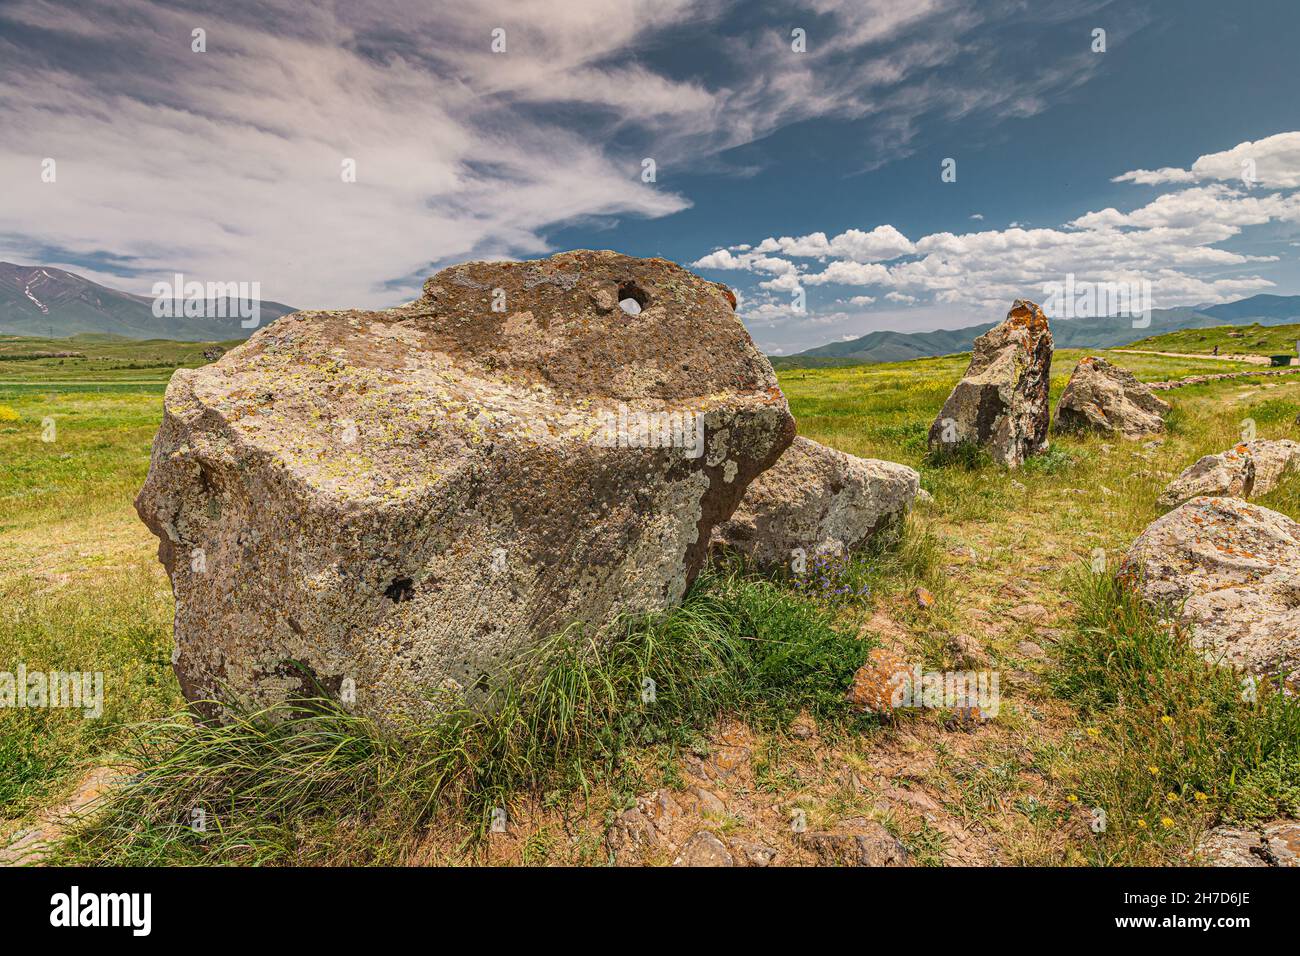 Carahunge ou Armenian Stonehenge - un site archéologique avec un objectif obscur et mystique dans les temps anciens. Banque D'Images